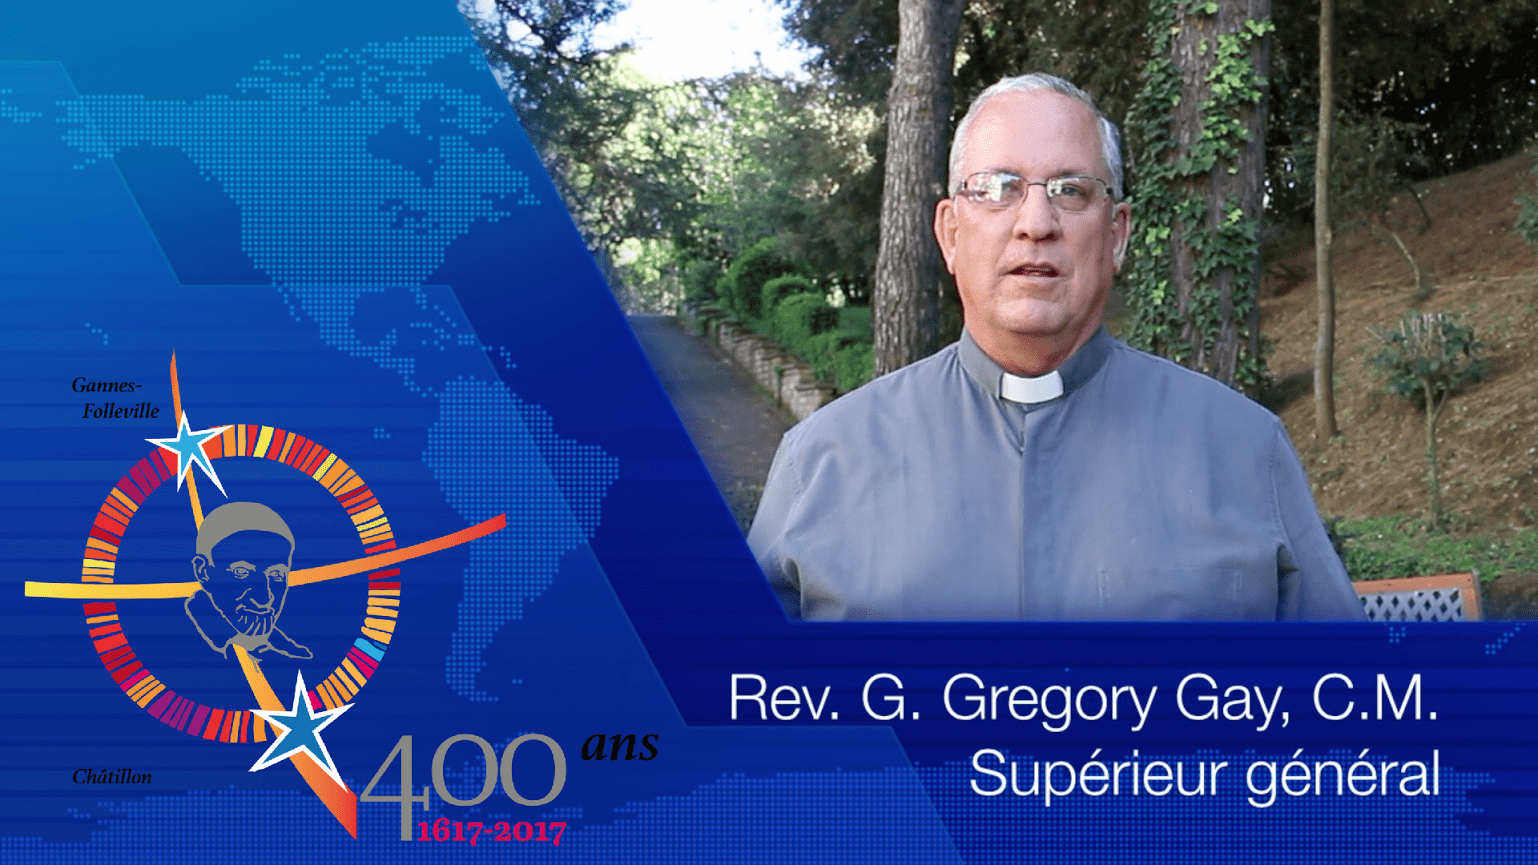 P. Gregory Gay, C.M. : Message pour la Pentecôte et #famvin400